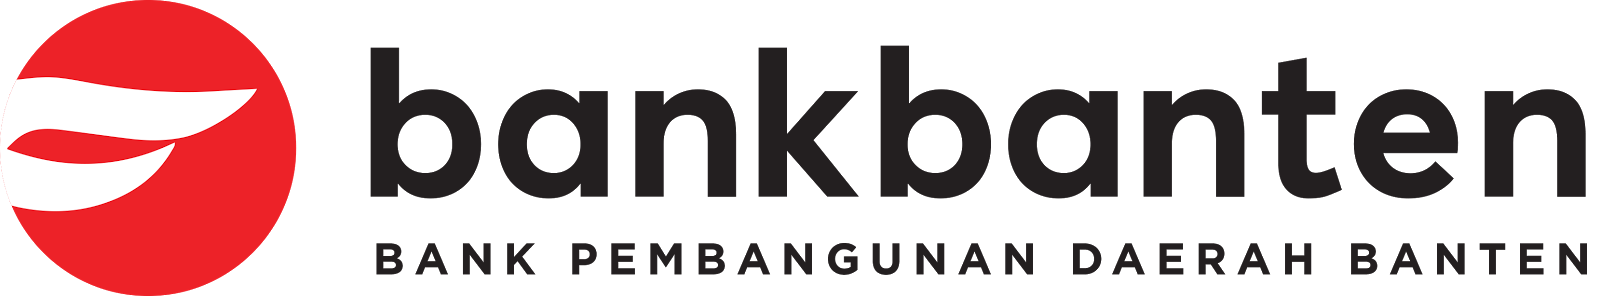 Logo Bank Banten